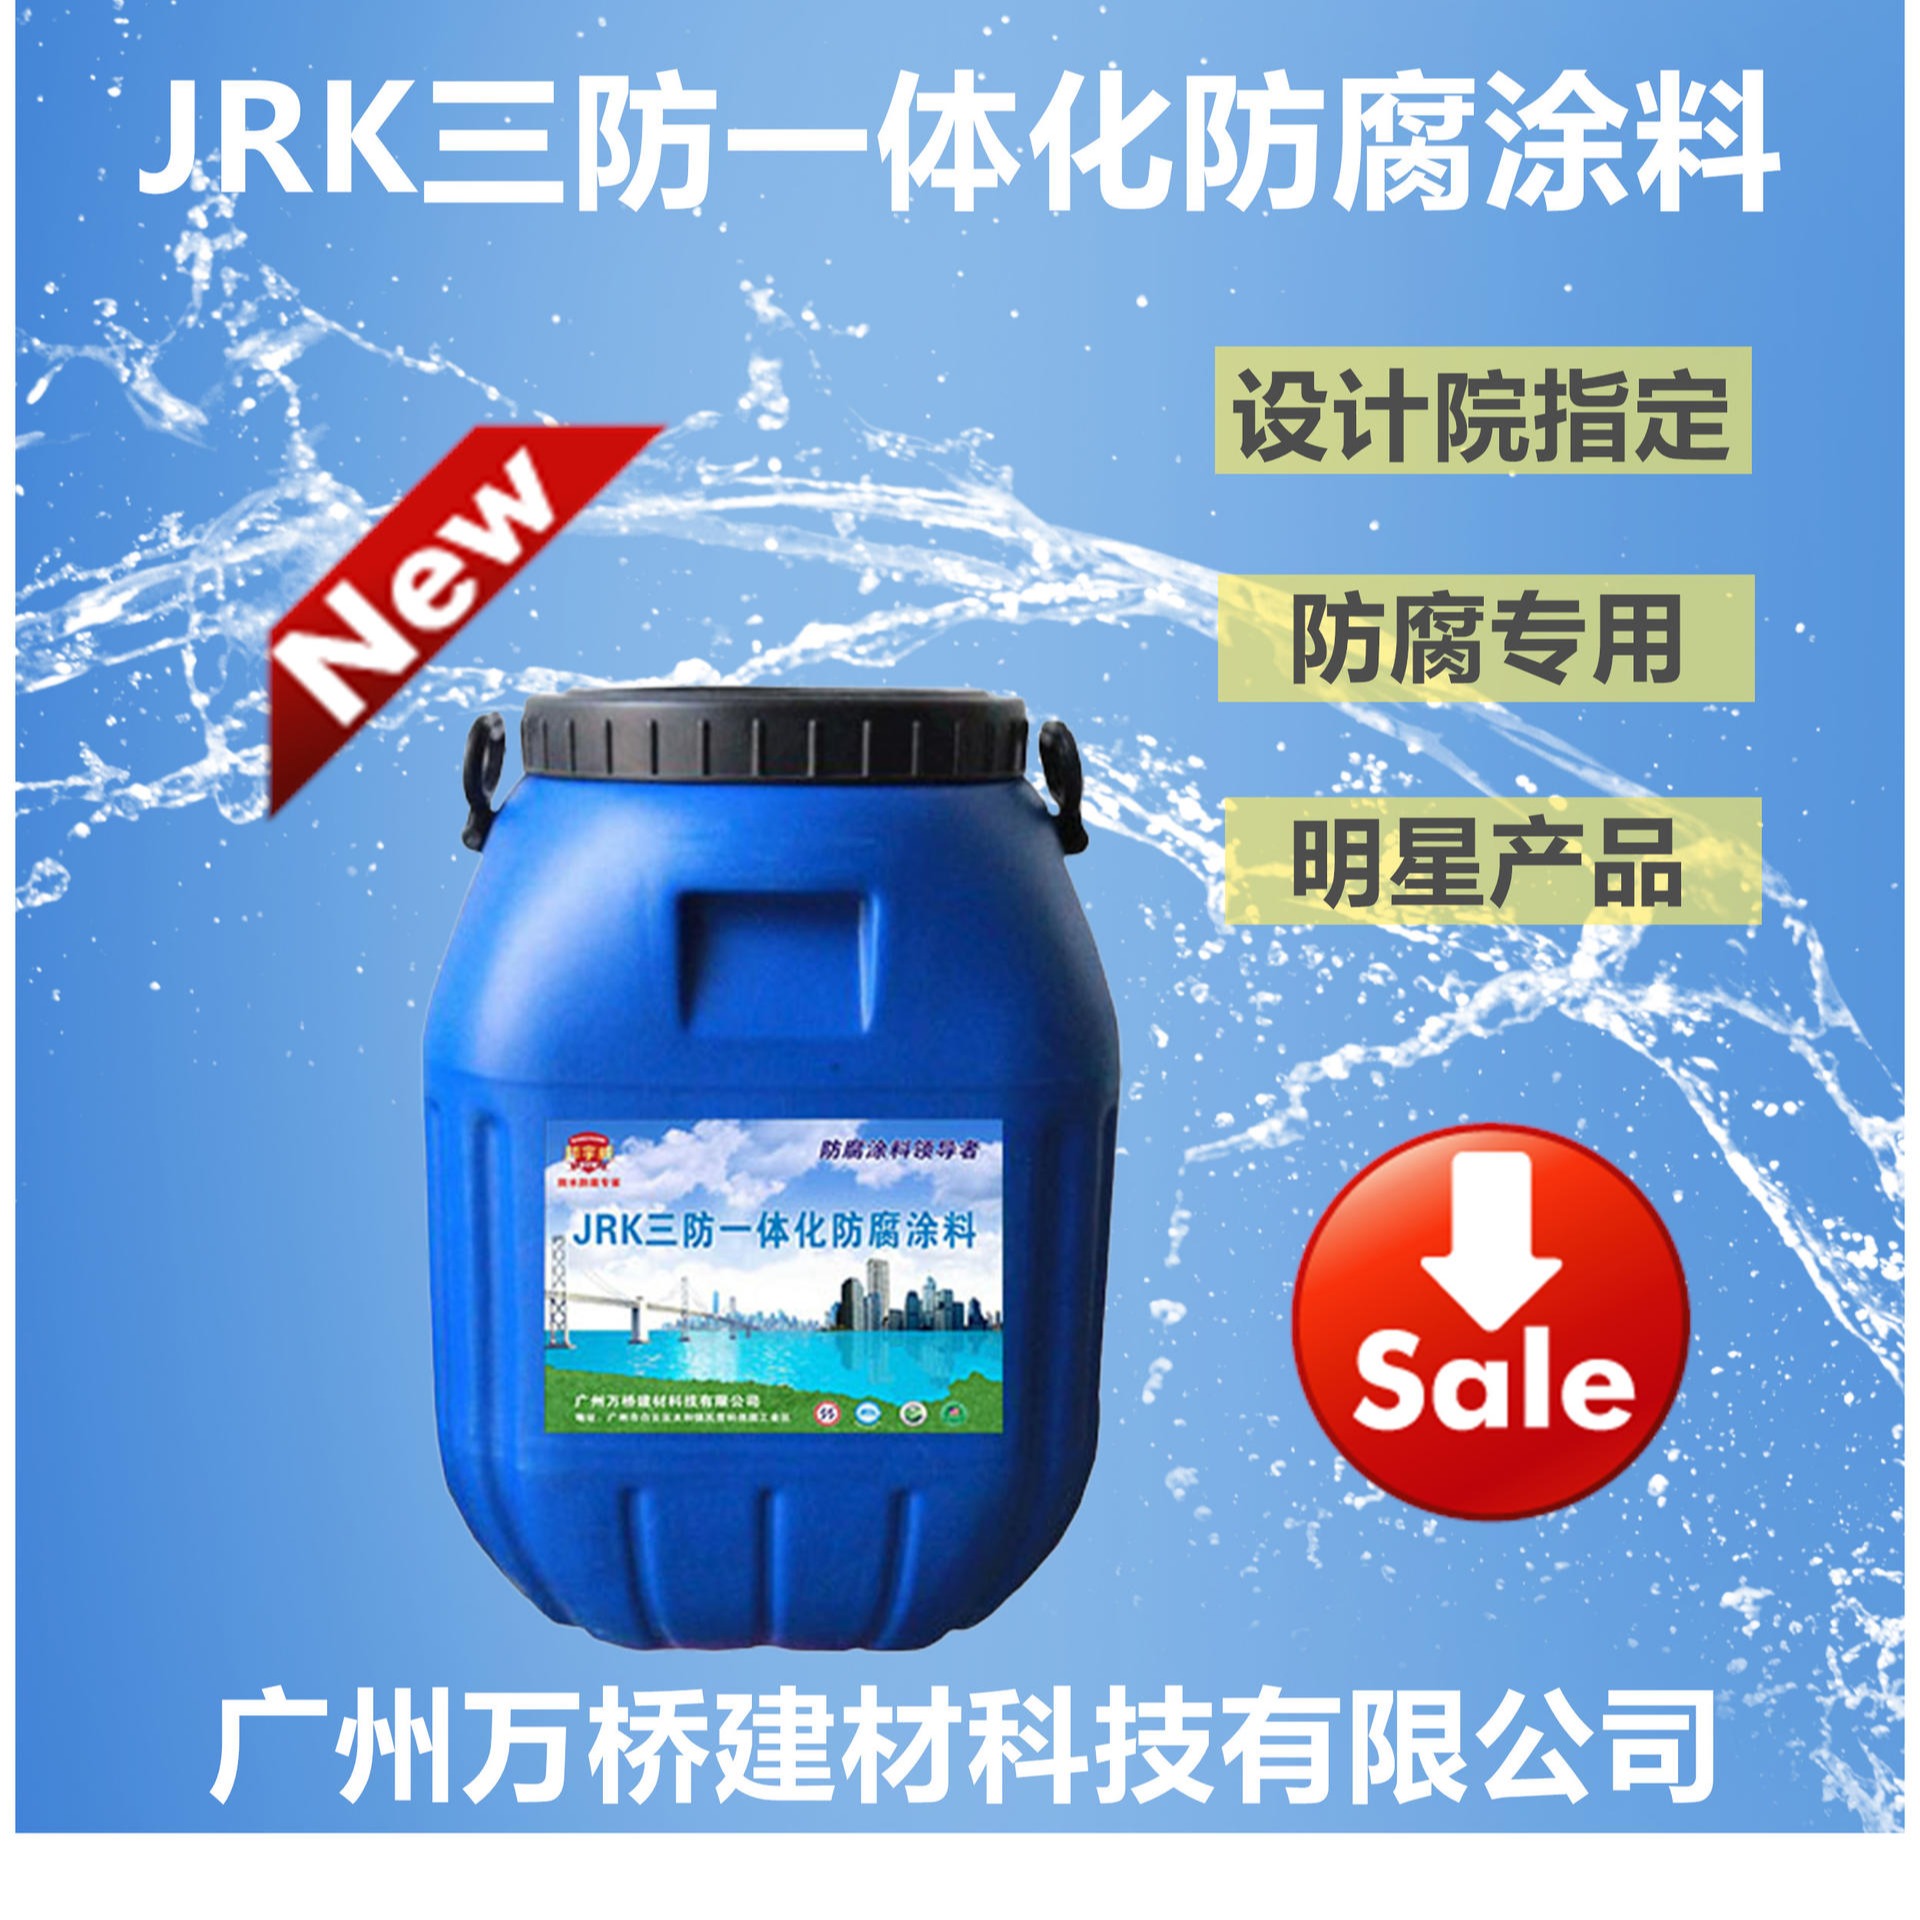 邦宇威JRK三防一体化弹性涂层保护系统 大量供应、性价比高、发货快